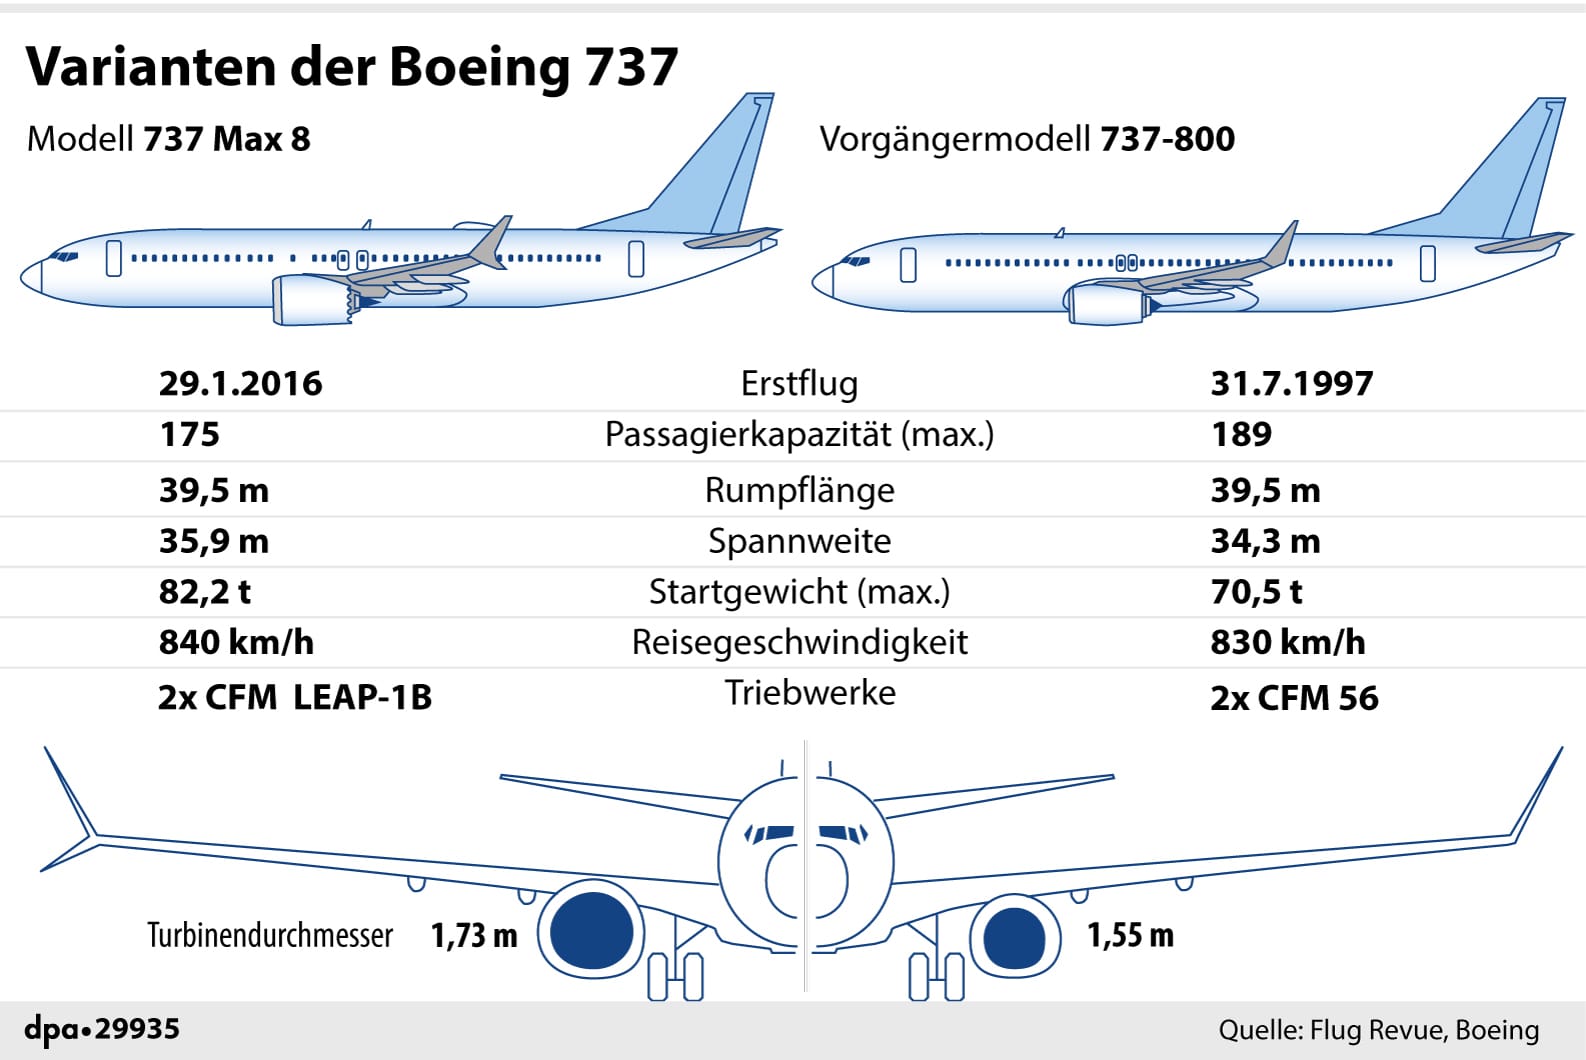 Gegenüberstellung: die Boeing 737 Max 8 im Vergleich zum Vorgängermodell 737-800.